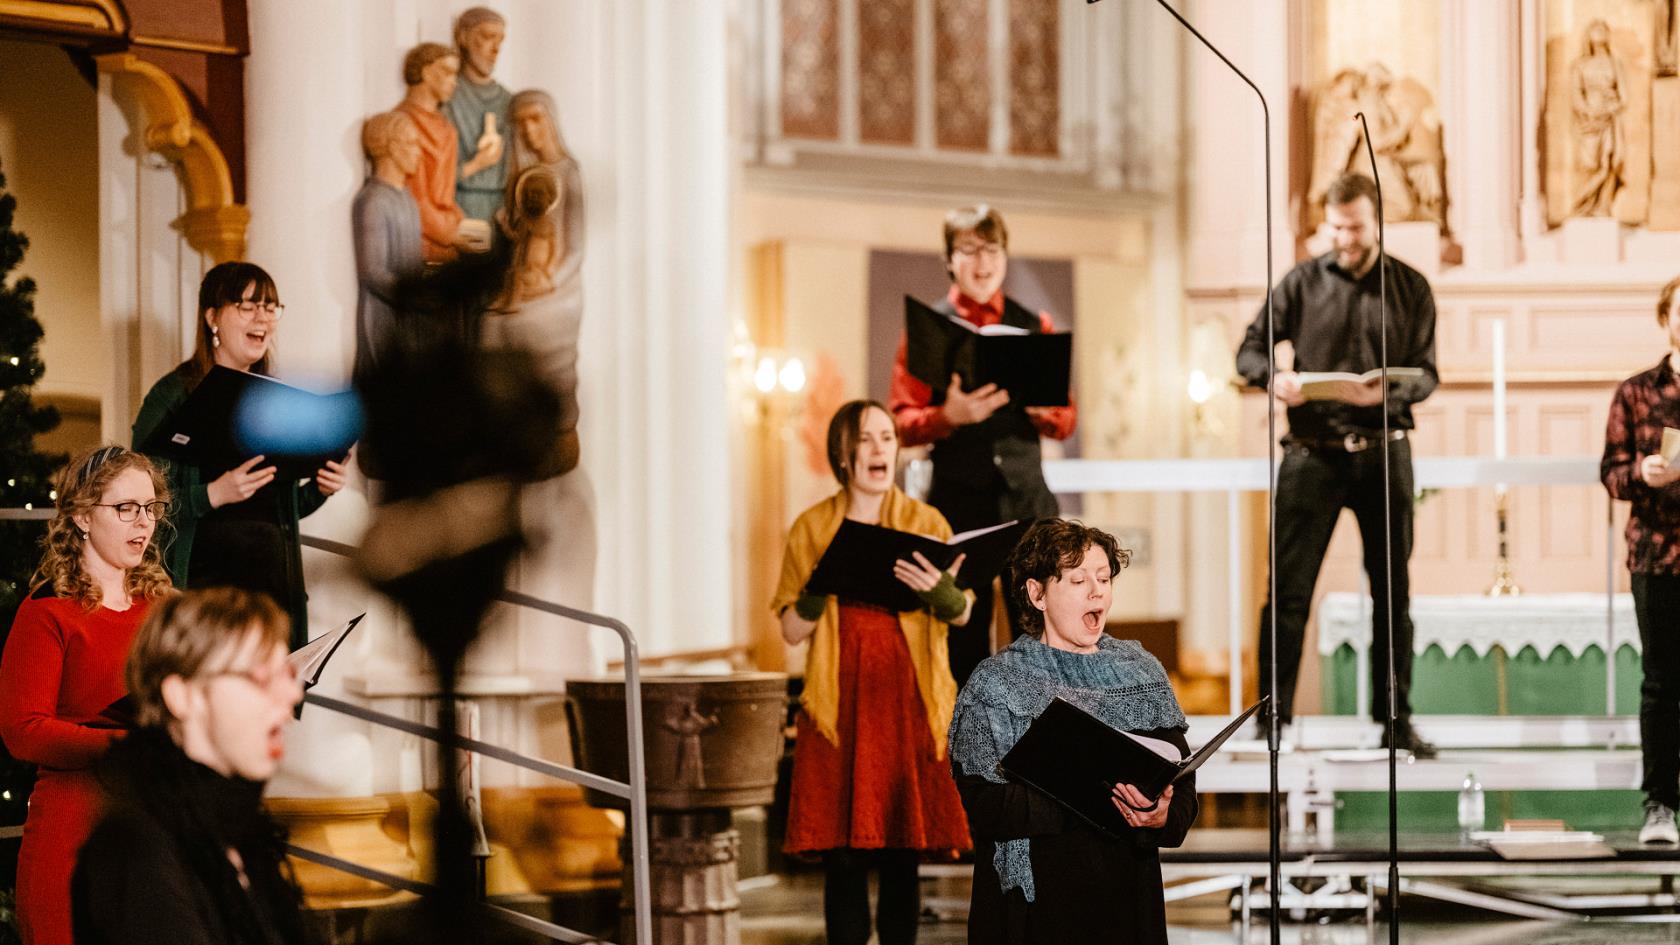 Advents- och jultidens konsertsatsning inleds med en sing along-konsert från Umeå stadskyrka med sångare från församlingens körer. Inspelningen är gjord innan begränsningen om att samla max åtta personer började gälla. 